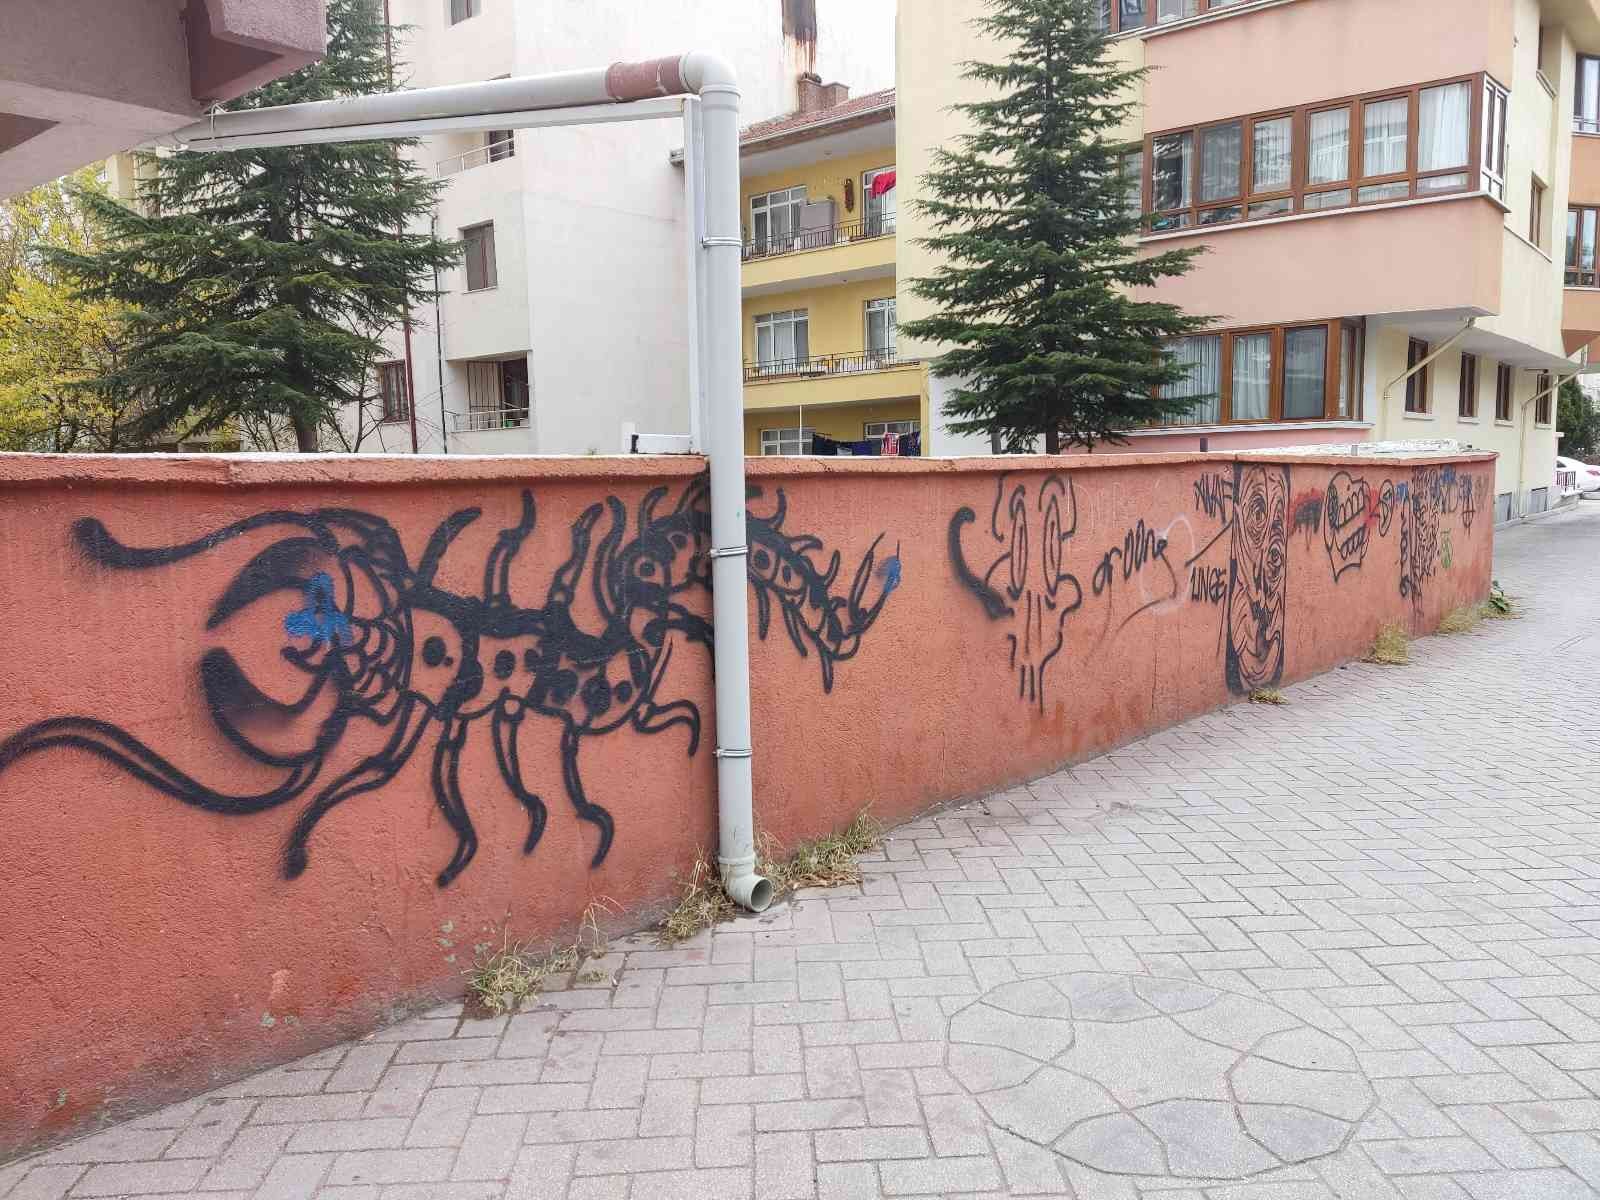 Sprey boyayla yazılan duvar yazıları görüntü kirliliği oluşturuyor